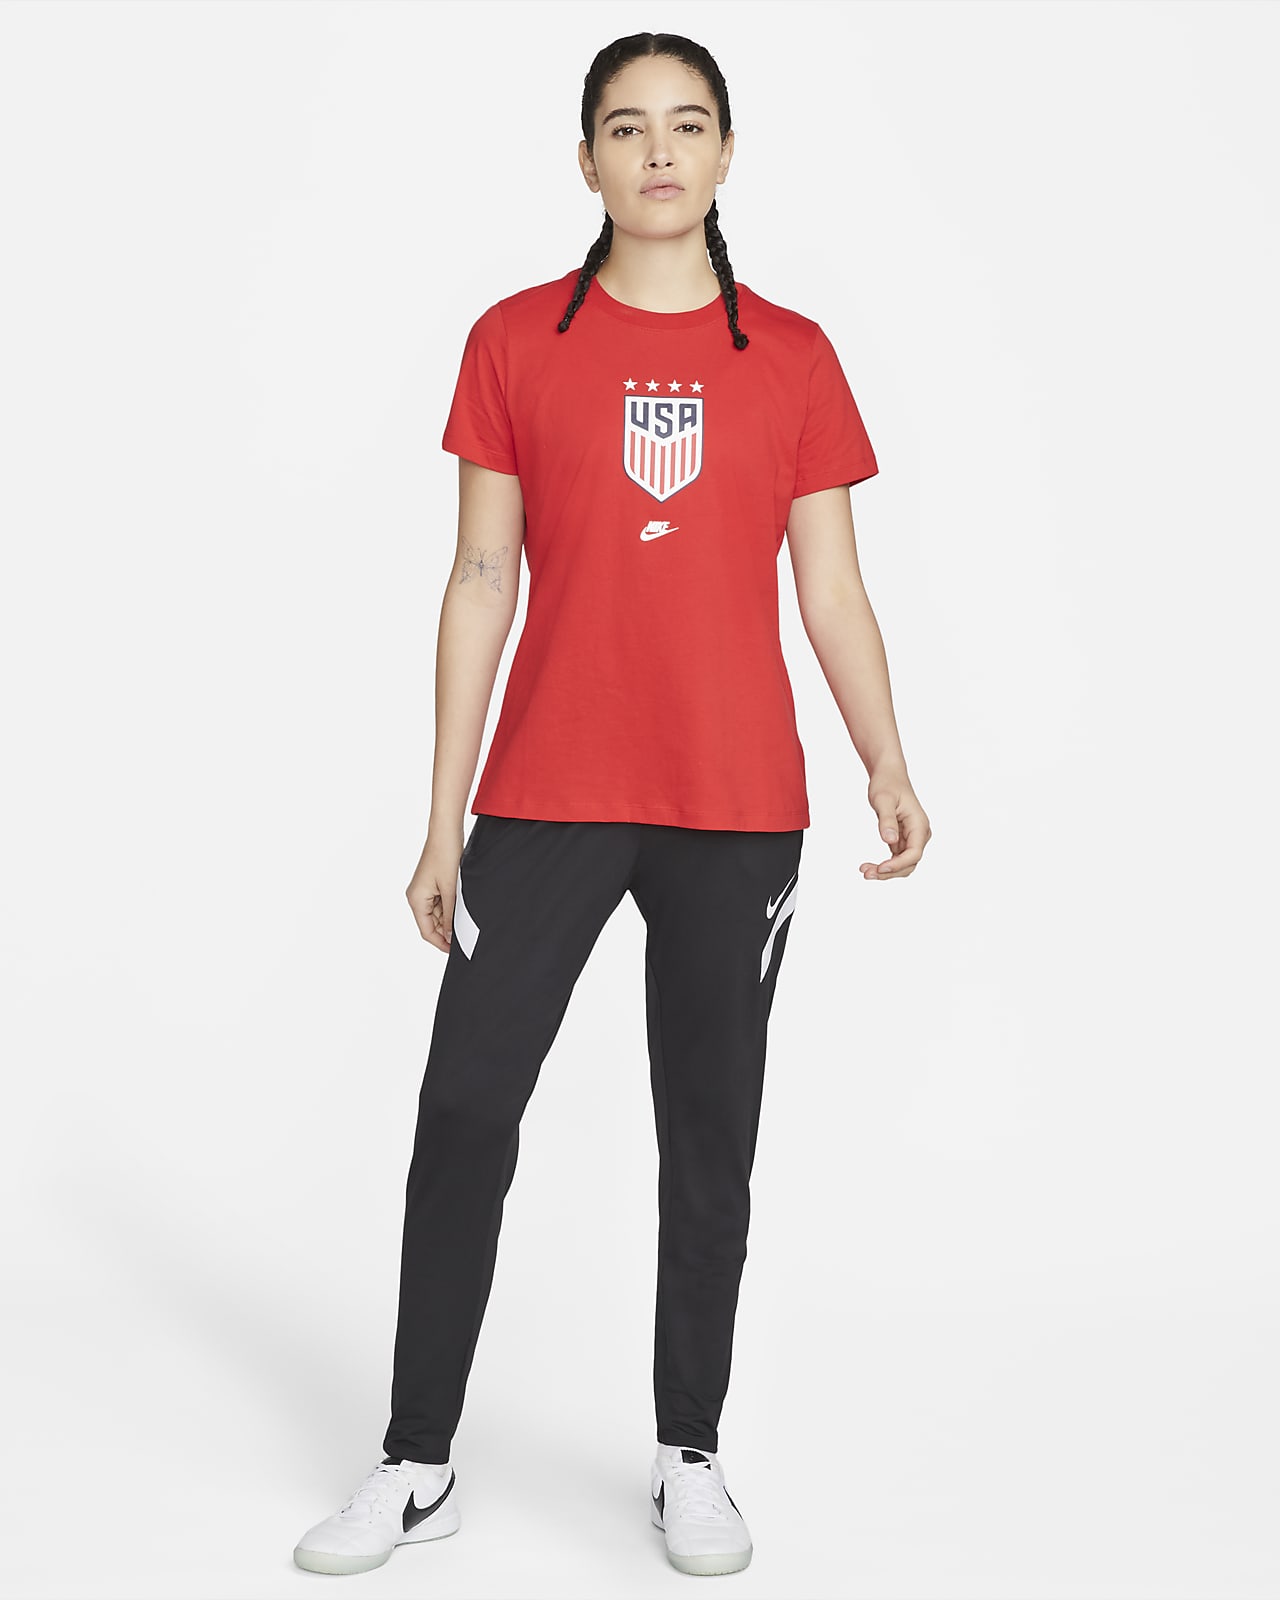 MetroMissileDesigns Play Like A Girl Shirt - USA Women's Soccer Tee - Women's National Team T-Shirt - World Cup Tee - Championship Shirt - Soccer T-Shirt - Play